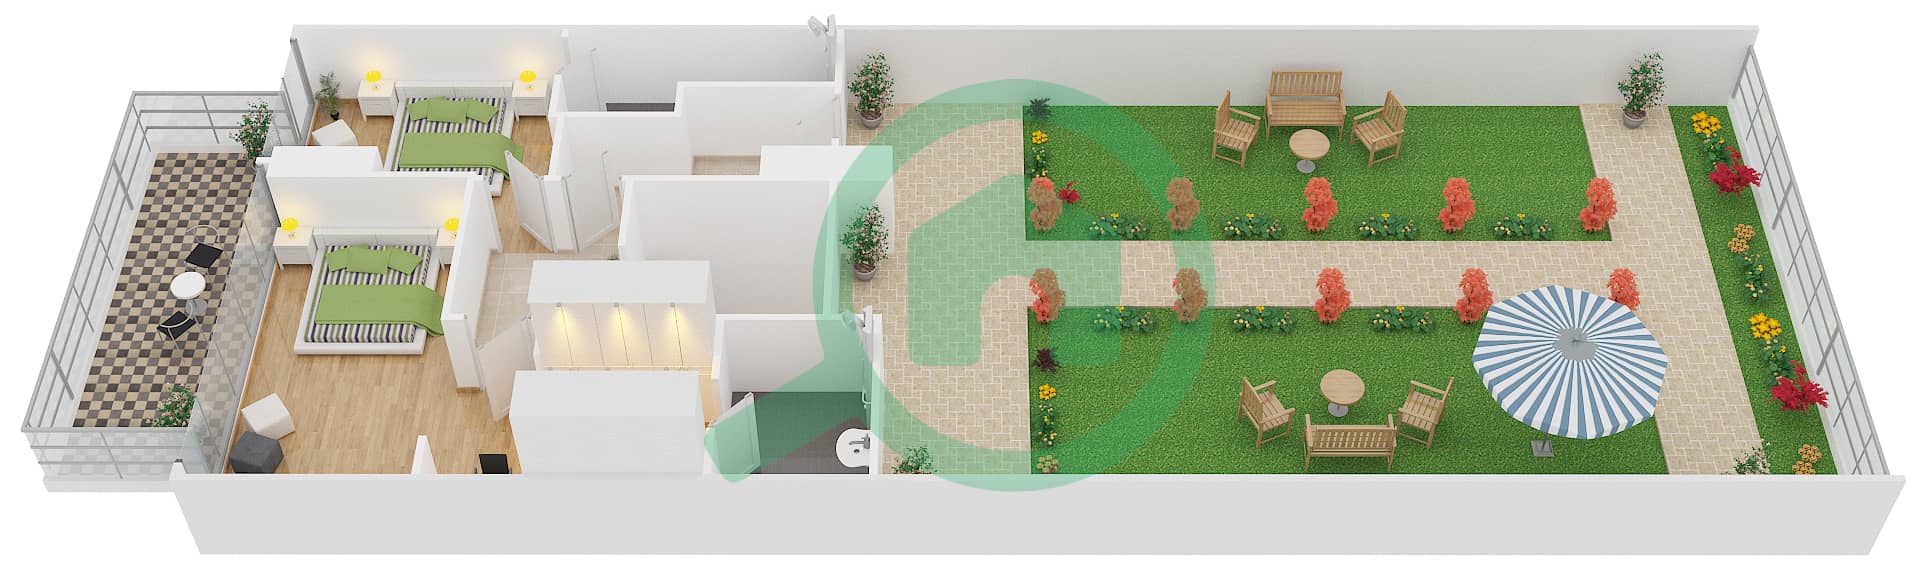 Зайя Хамени - Апартамент 2 Cпальни планировка Тип DUPLEX B Upper Floor interactive3D